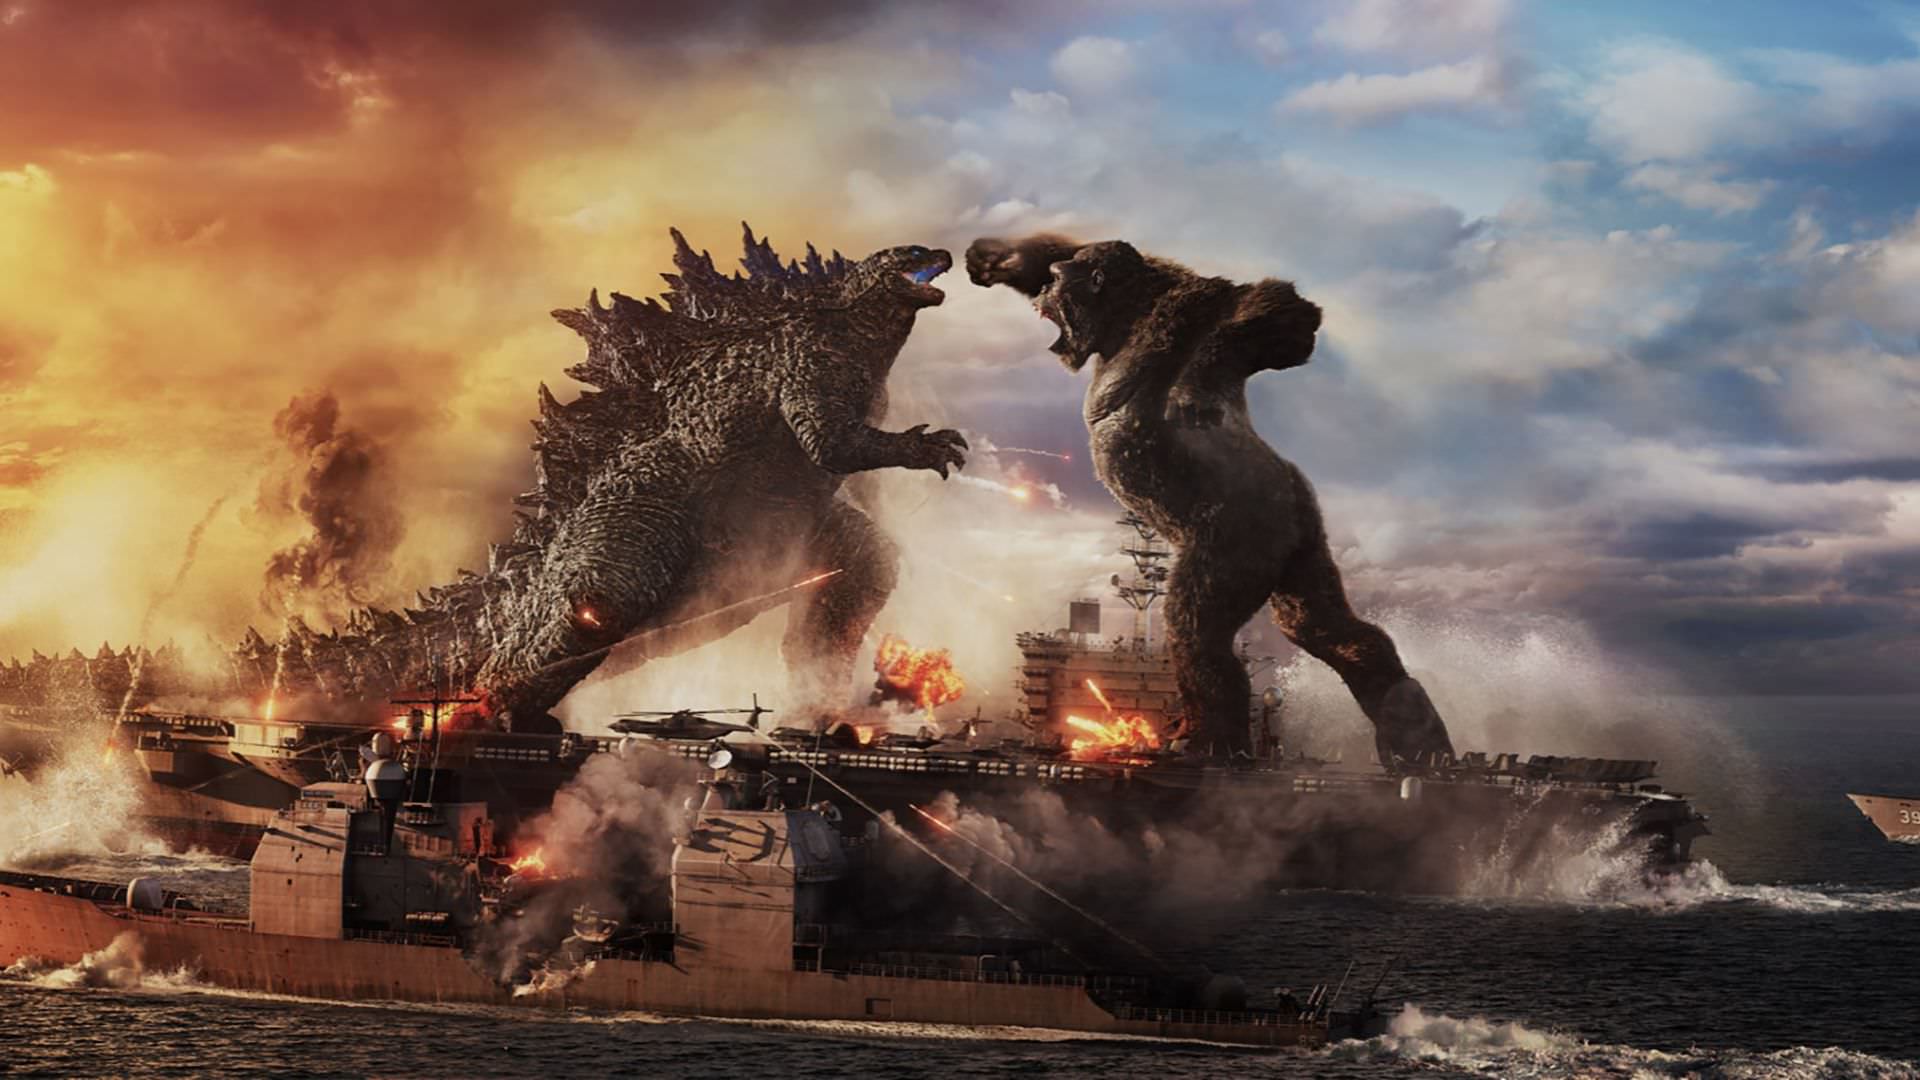 مبارزه گودزیلا با کینگ کونگ در زیر دریا در پوستر جدید فیلم Godzilla vs. Kong